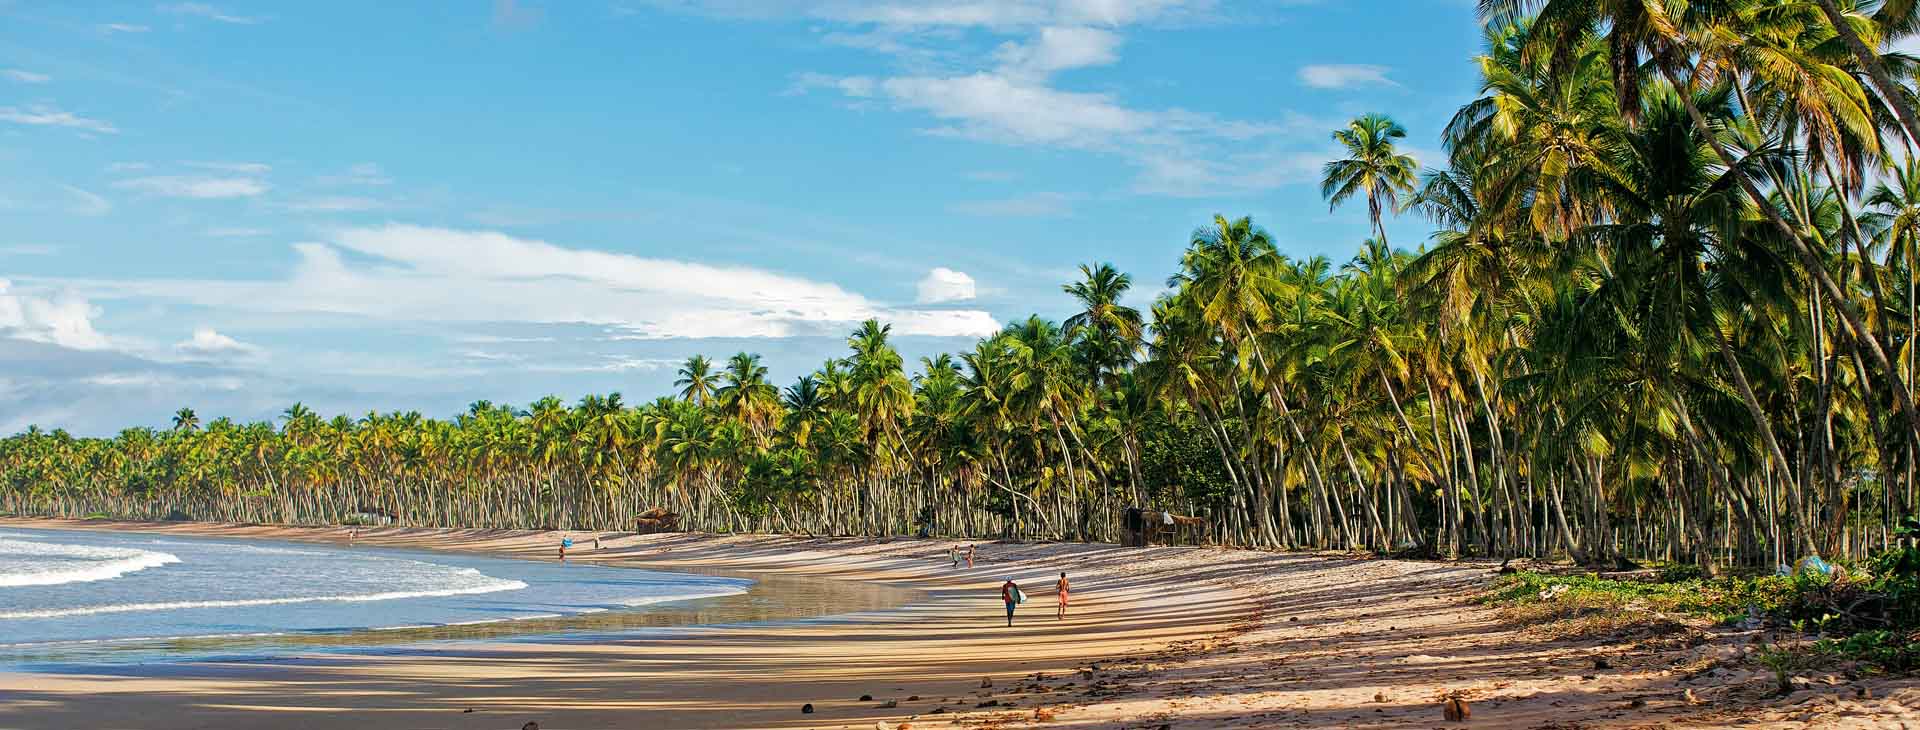 Brazylia - Miraże dzikich plaż